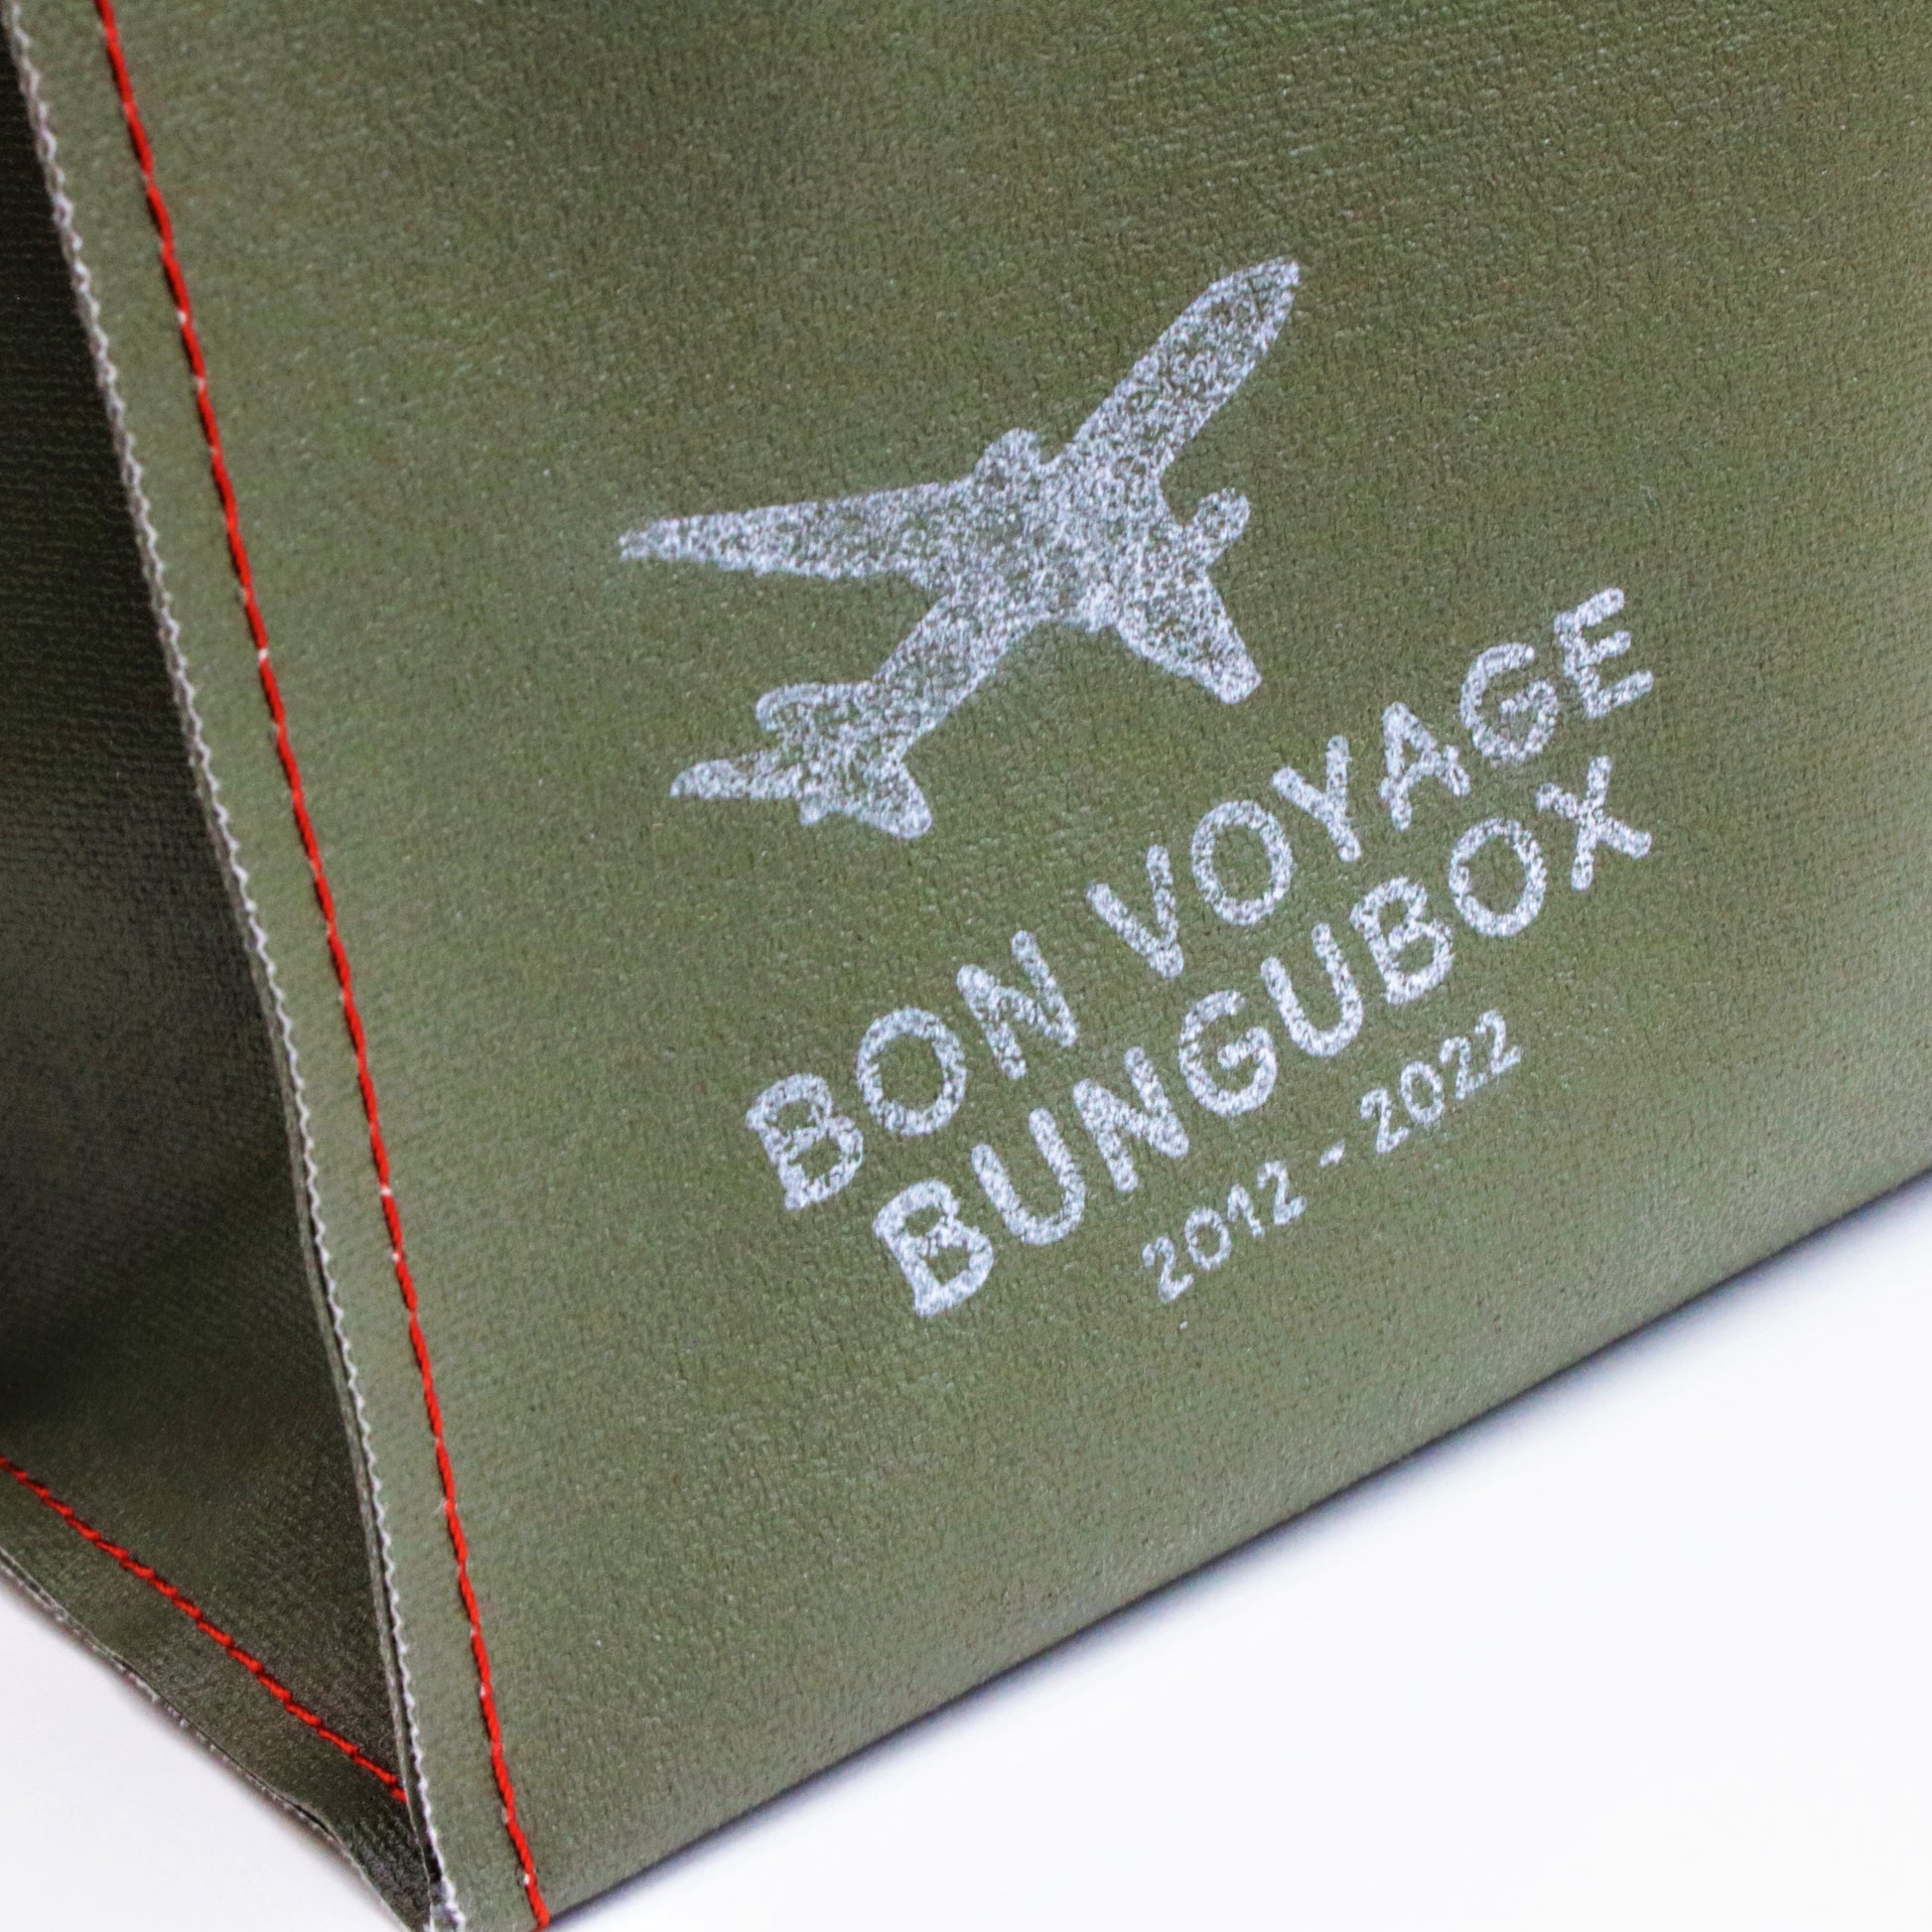 Bon Voyage Tote Bag